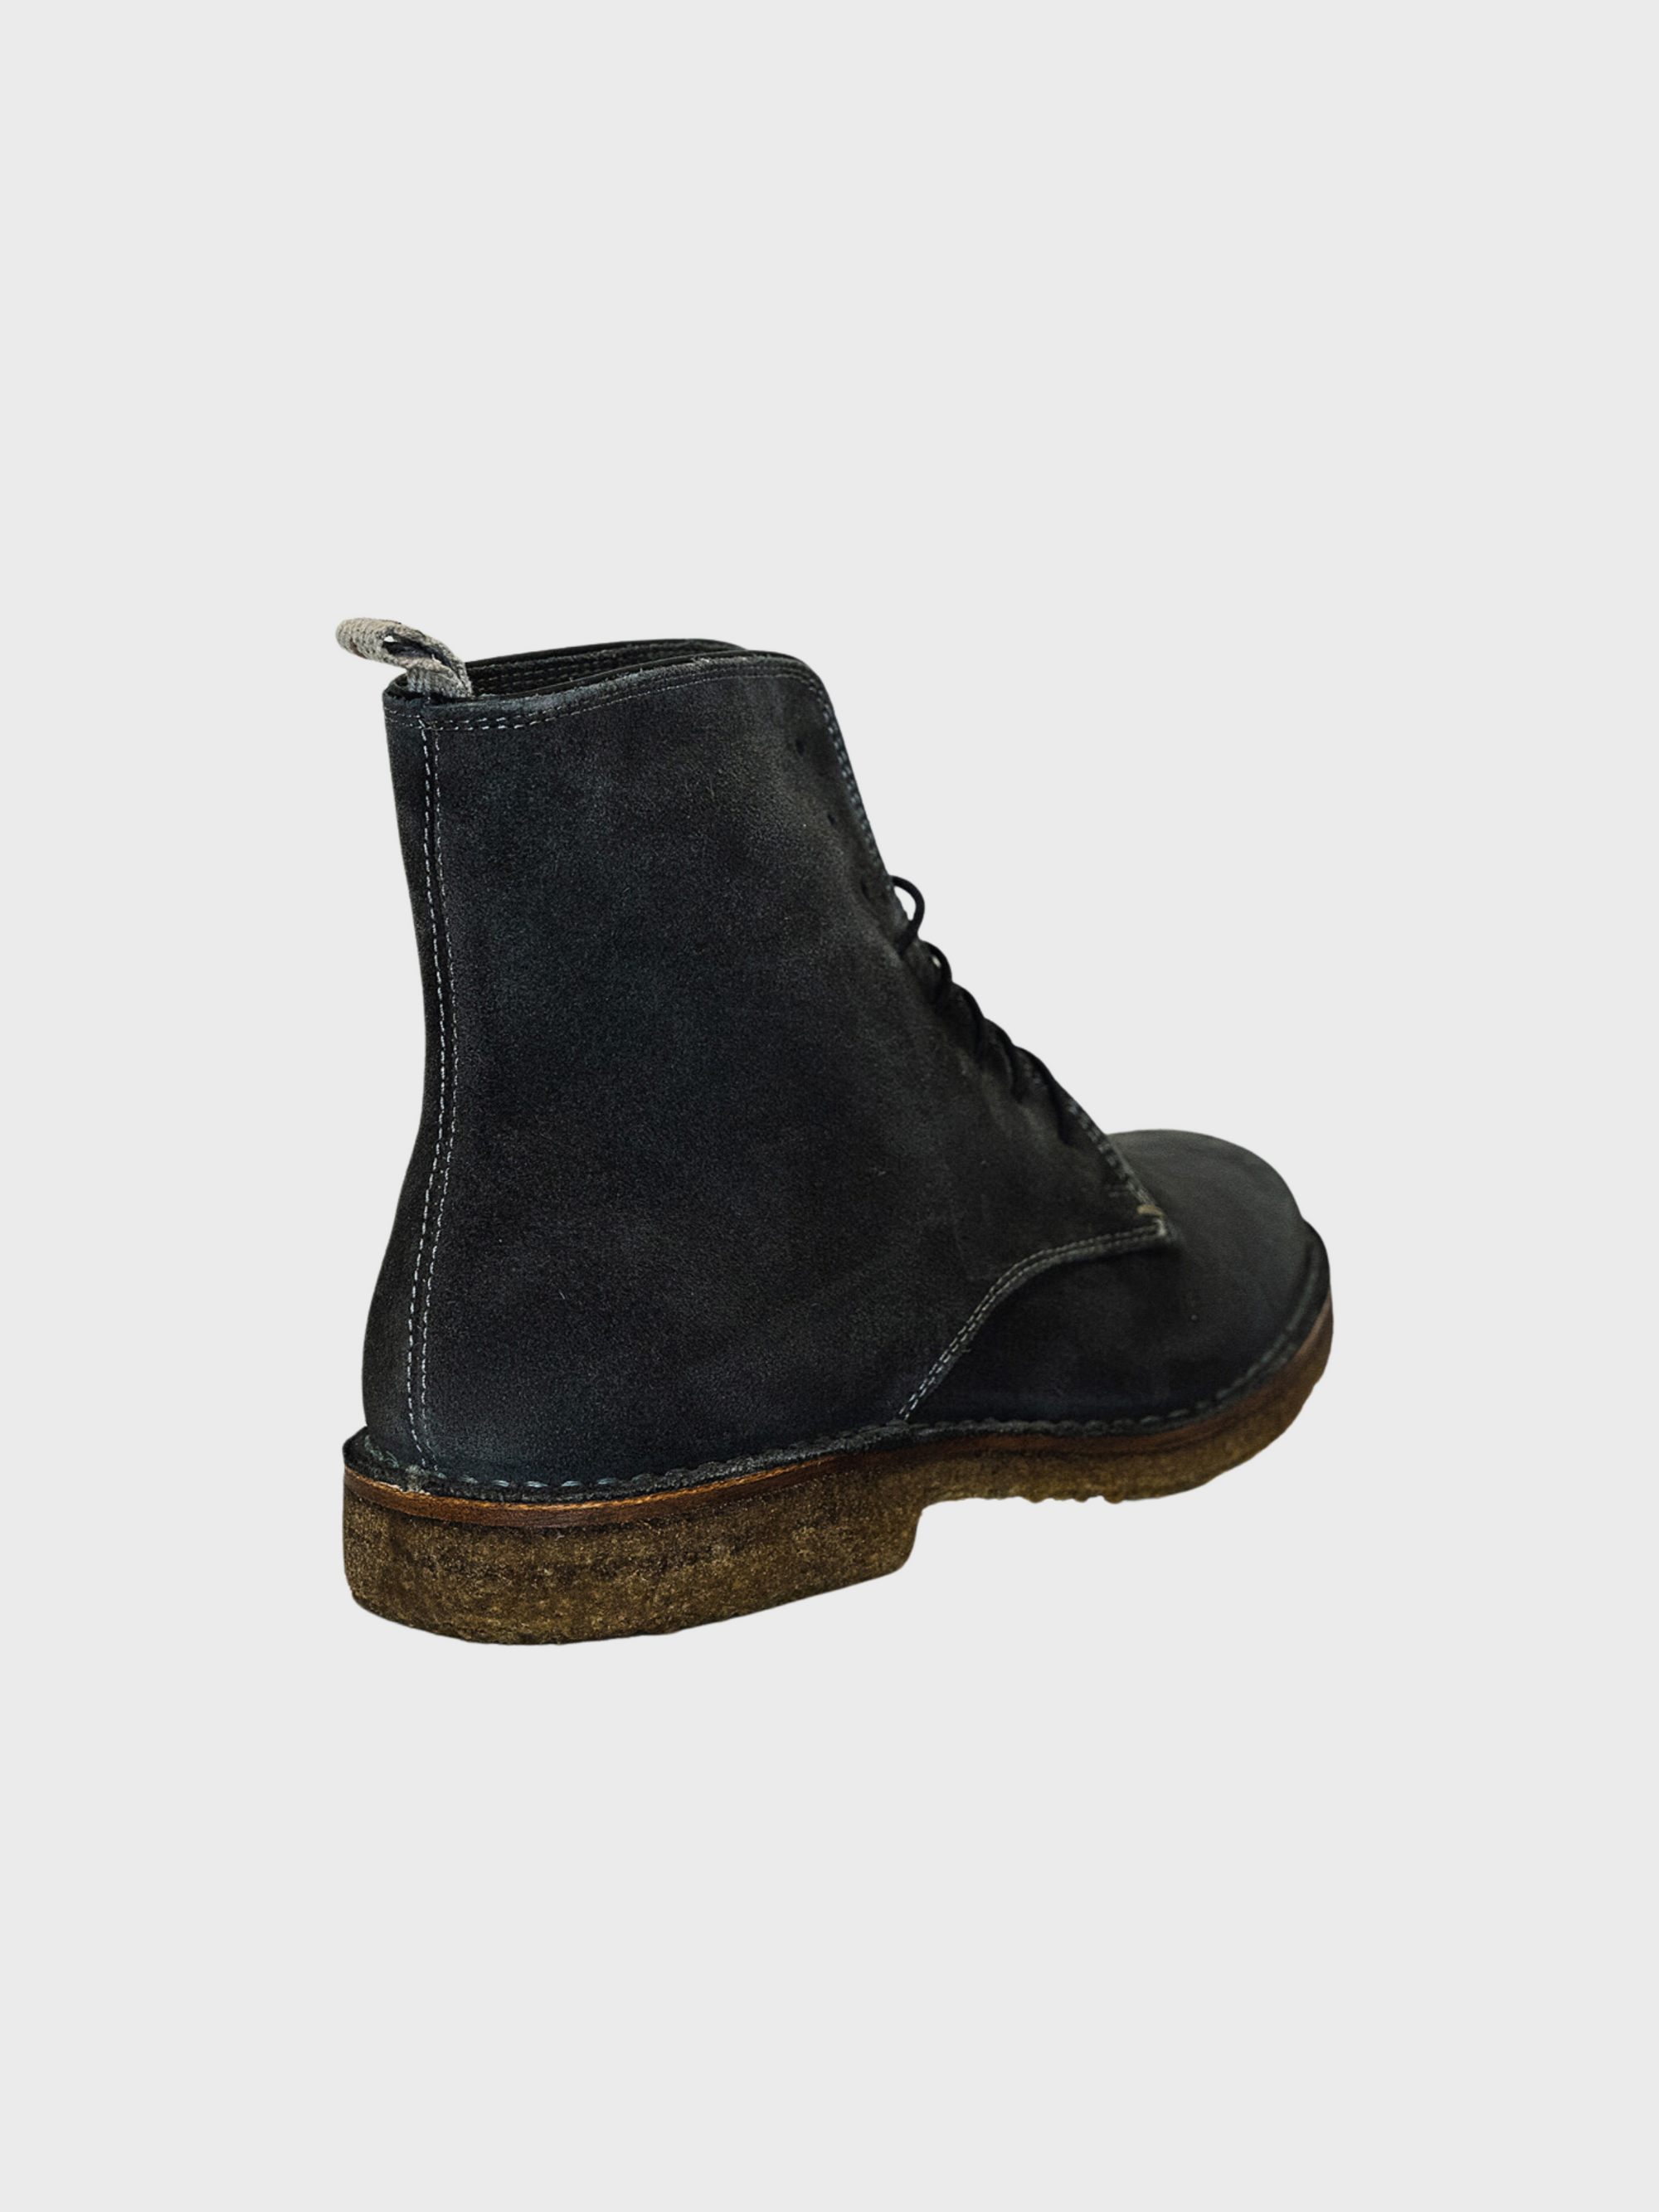 Astorflex CORE-Bootflex 001 Boot-695-Men&#39;s Shoes-Yaletown-Vancouver-Surrey-Canada